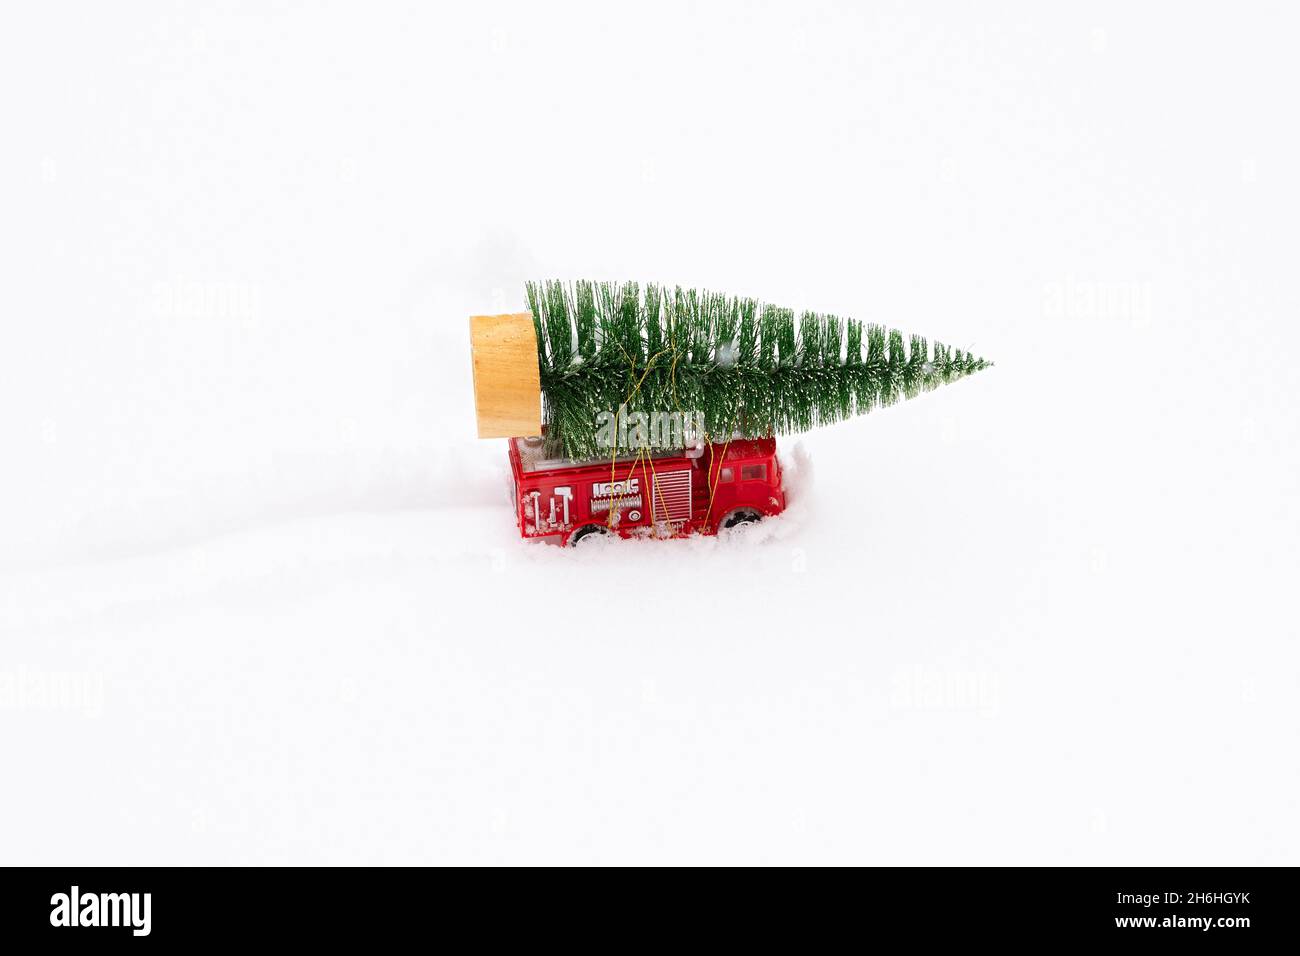 Voiture arbre de Noël neige.Livraison de jouets, l'humeur du nouvel an, cadeaux sur une voiture miniature rouge pour enfants dans la neige.Le concept du nouvel an, Noël, h Banque D'Images